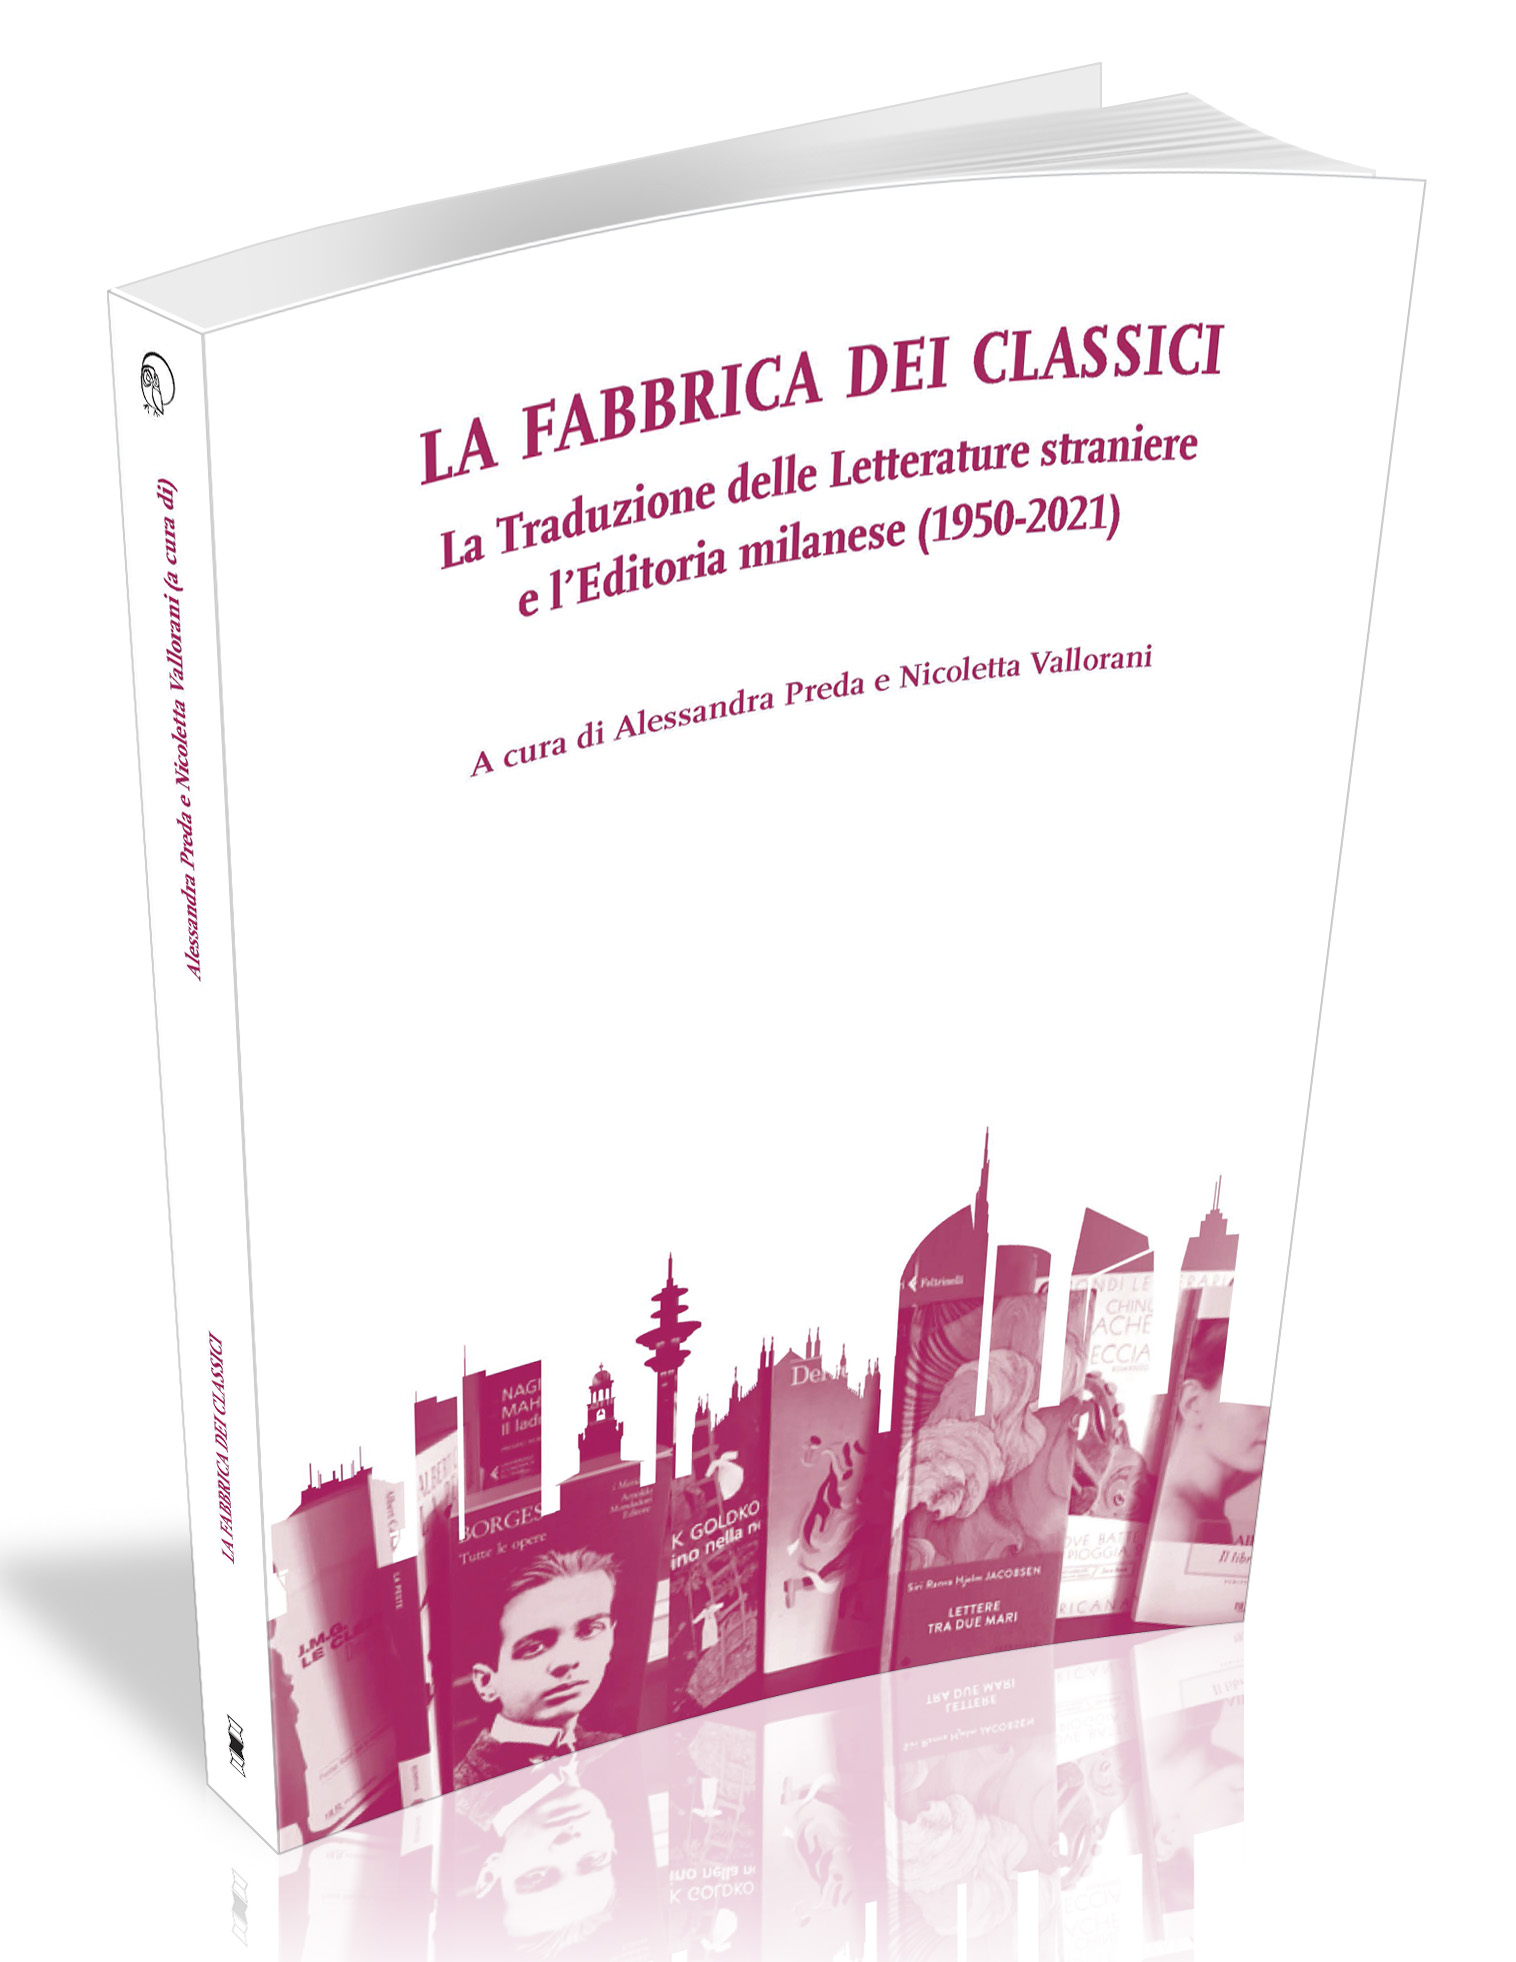 					Visualizza La fabbrica dei classici. La Traduzione delle Letterature straniere e l'Editoria milanese (1950-2021)
				